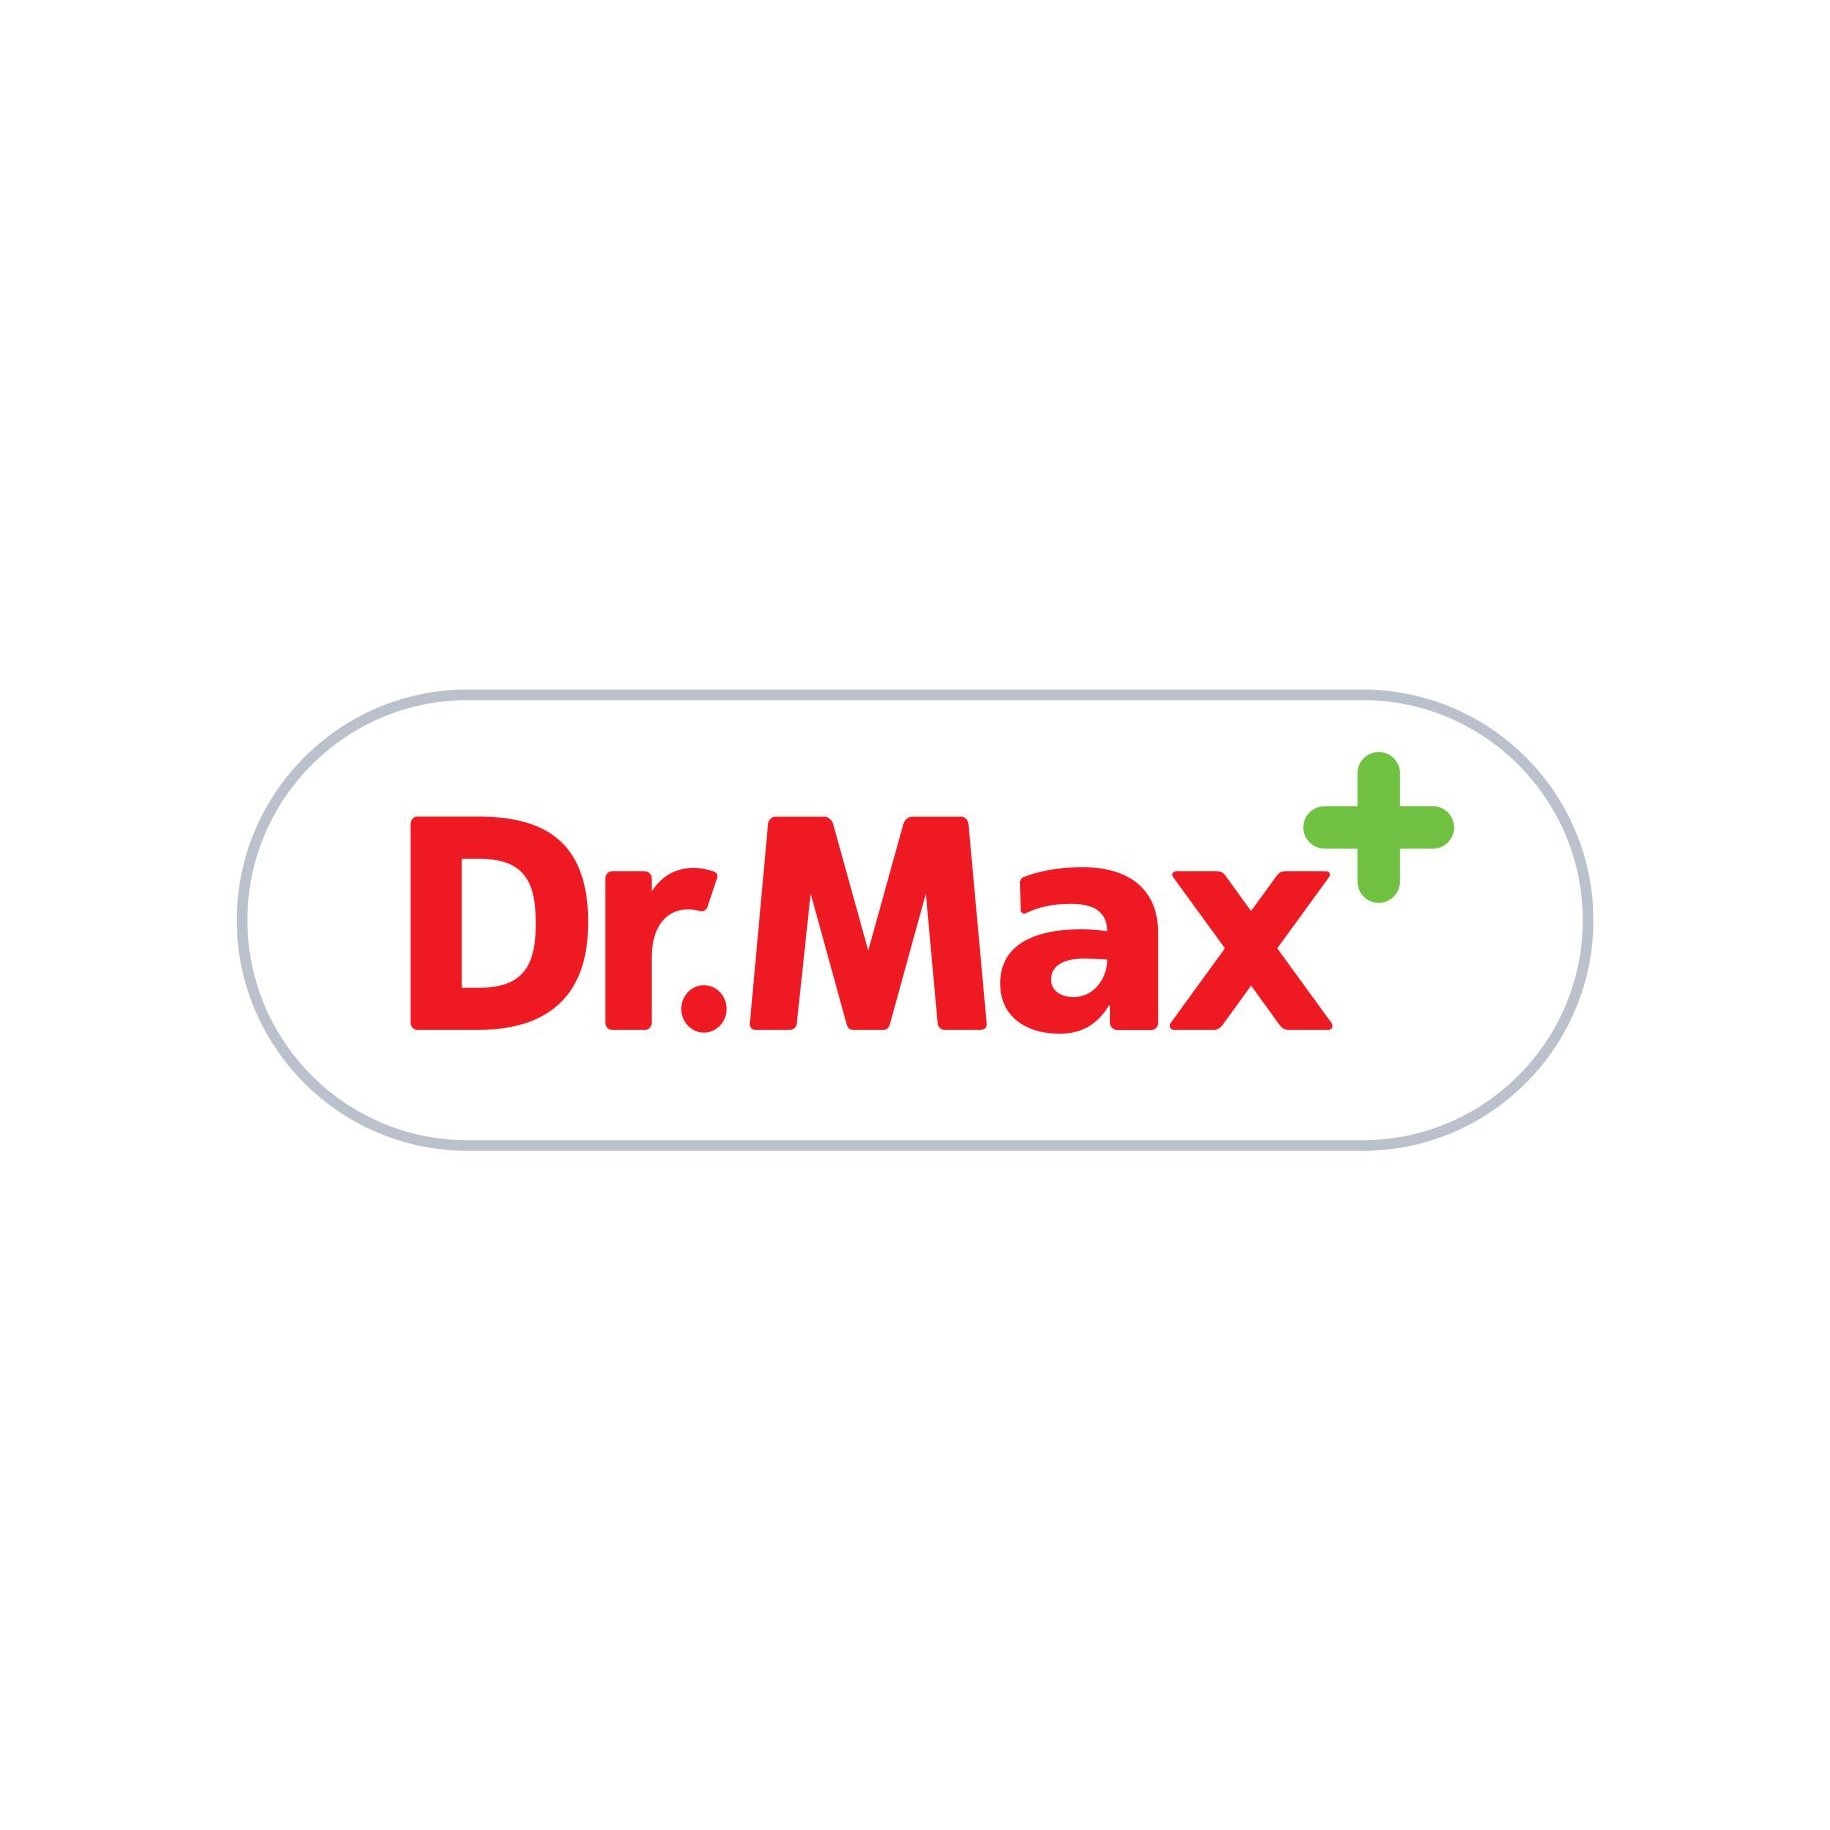 Lekáreň Dr.Max Lekáreň Dr.Max Tornaľa 0901 961 457